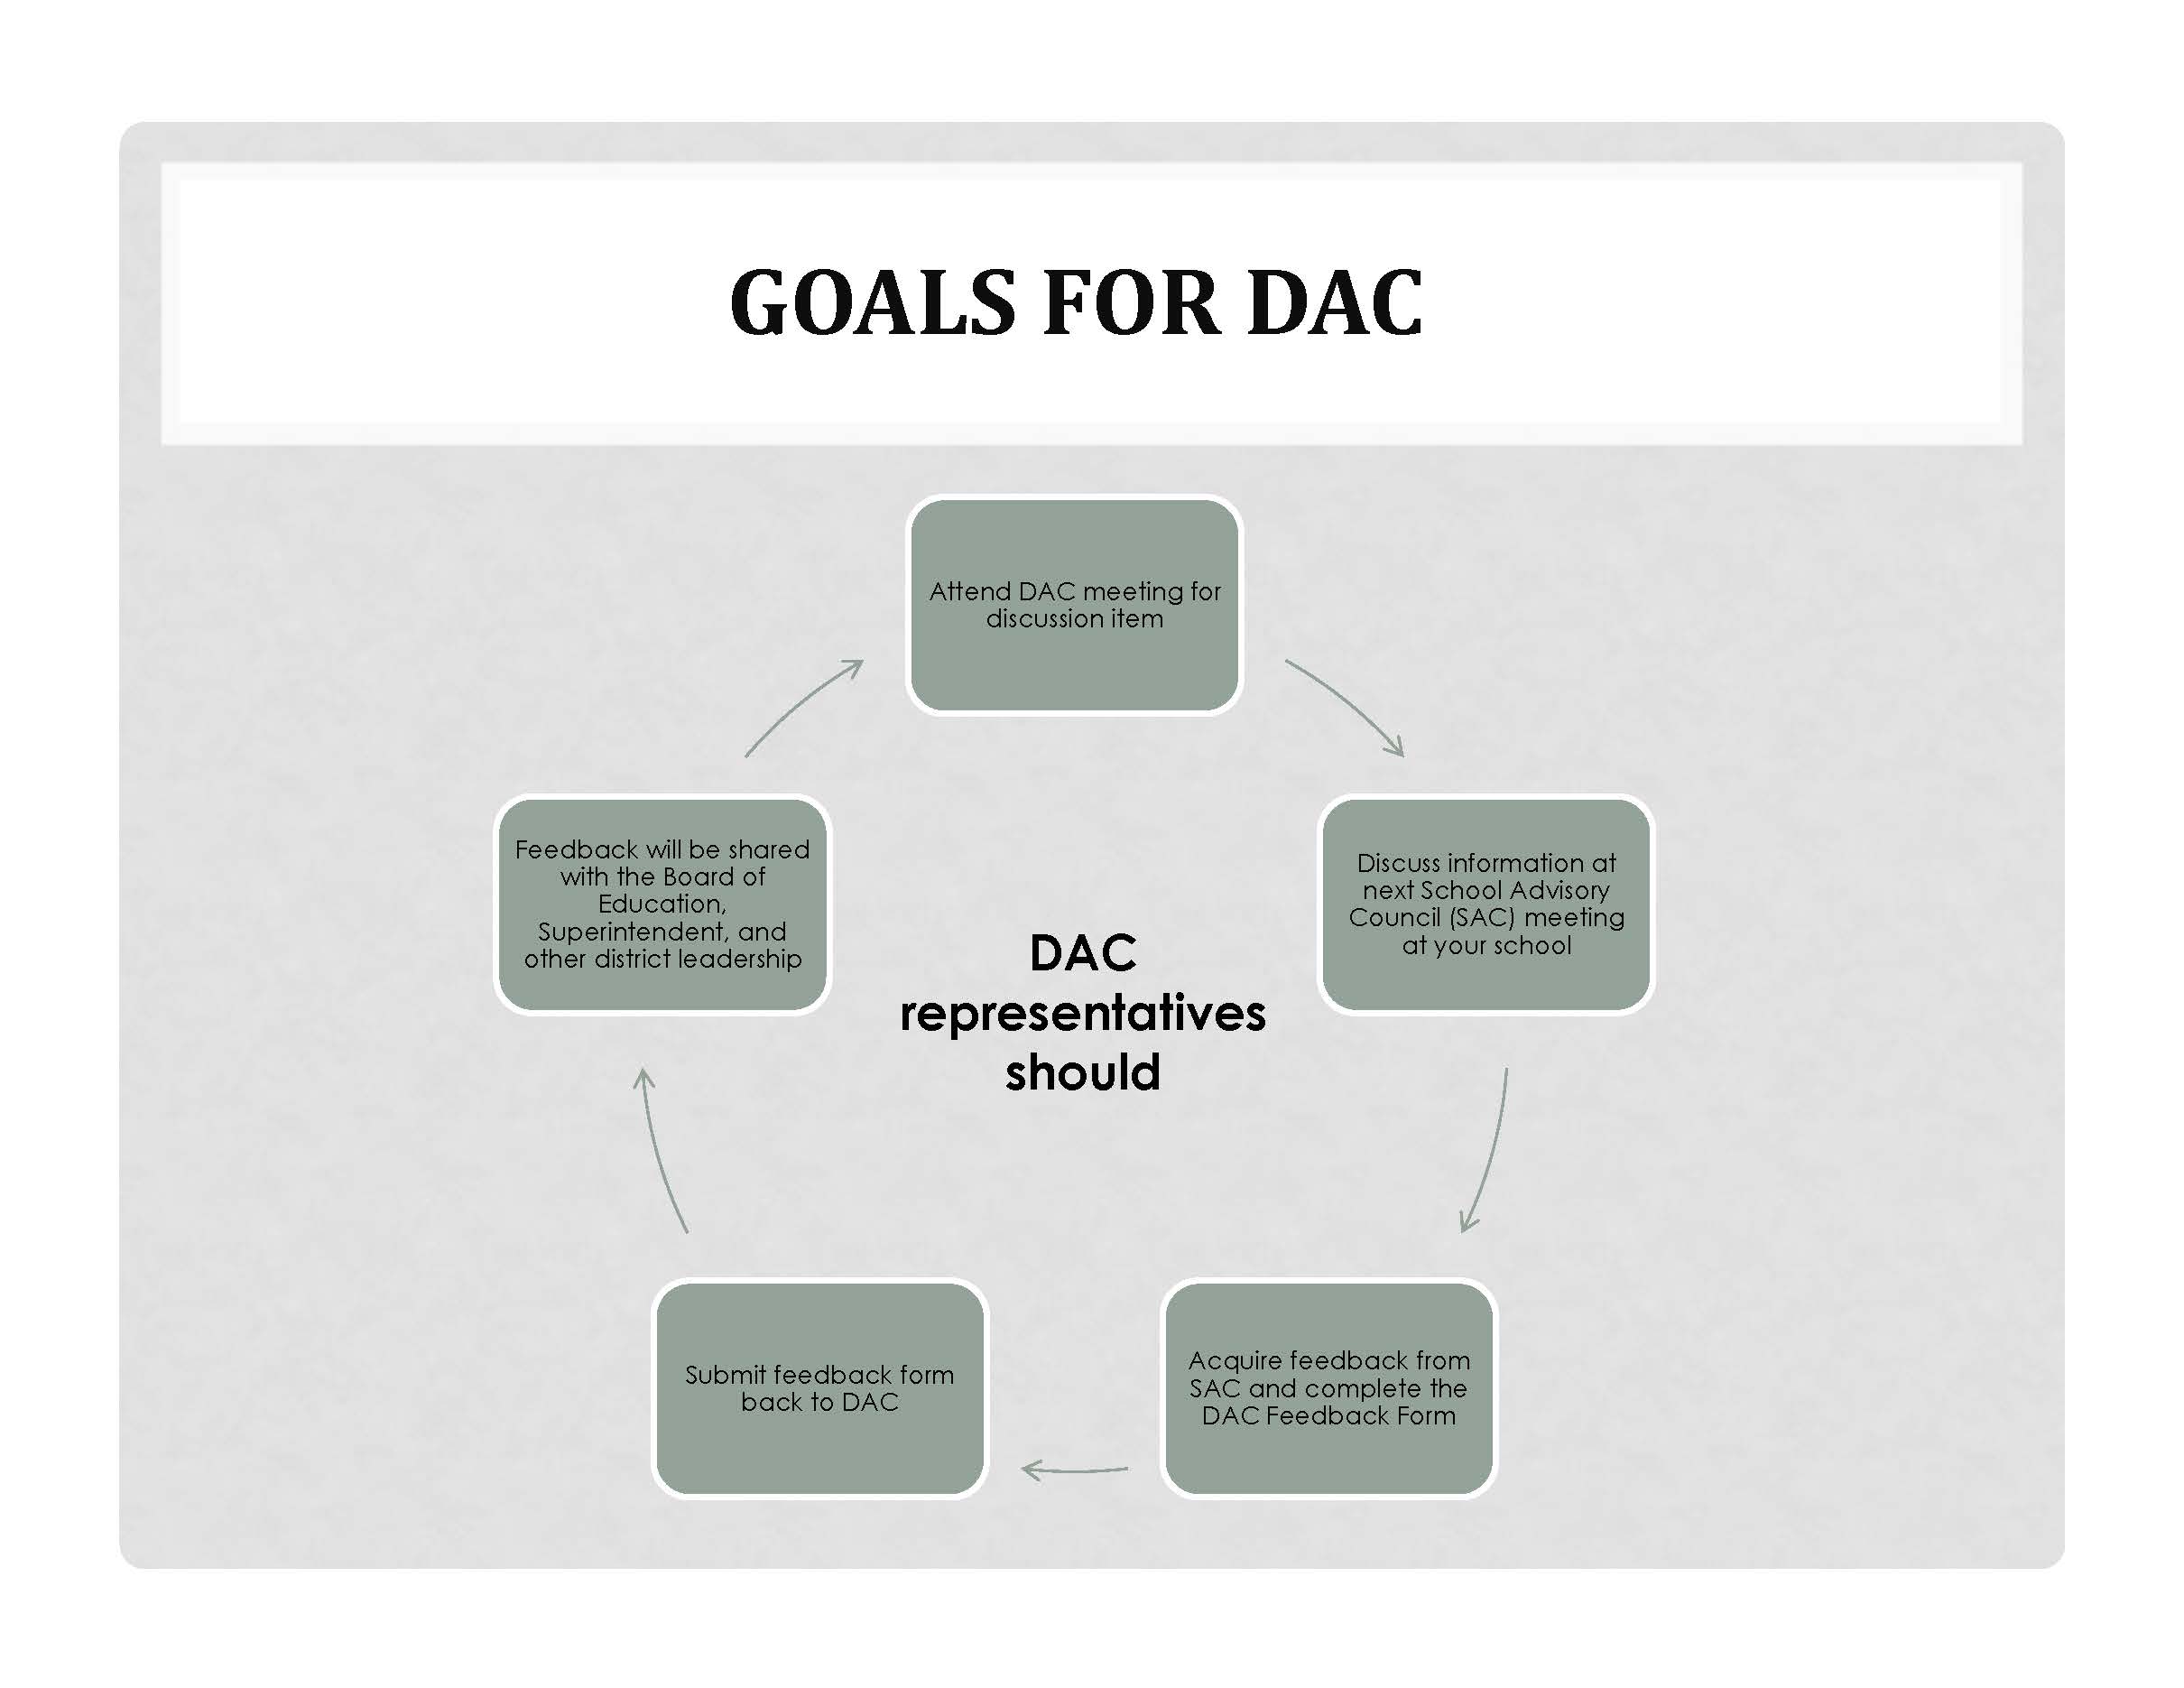 Goals for DAC